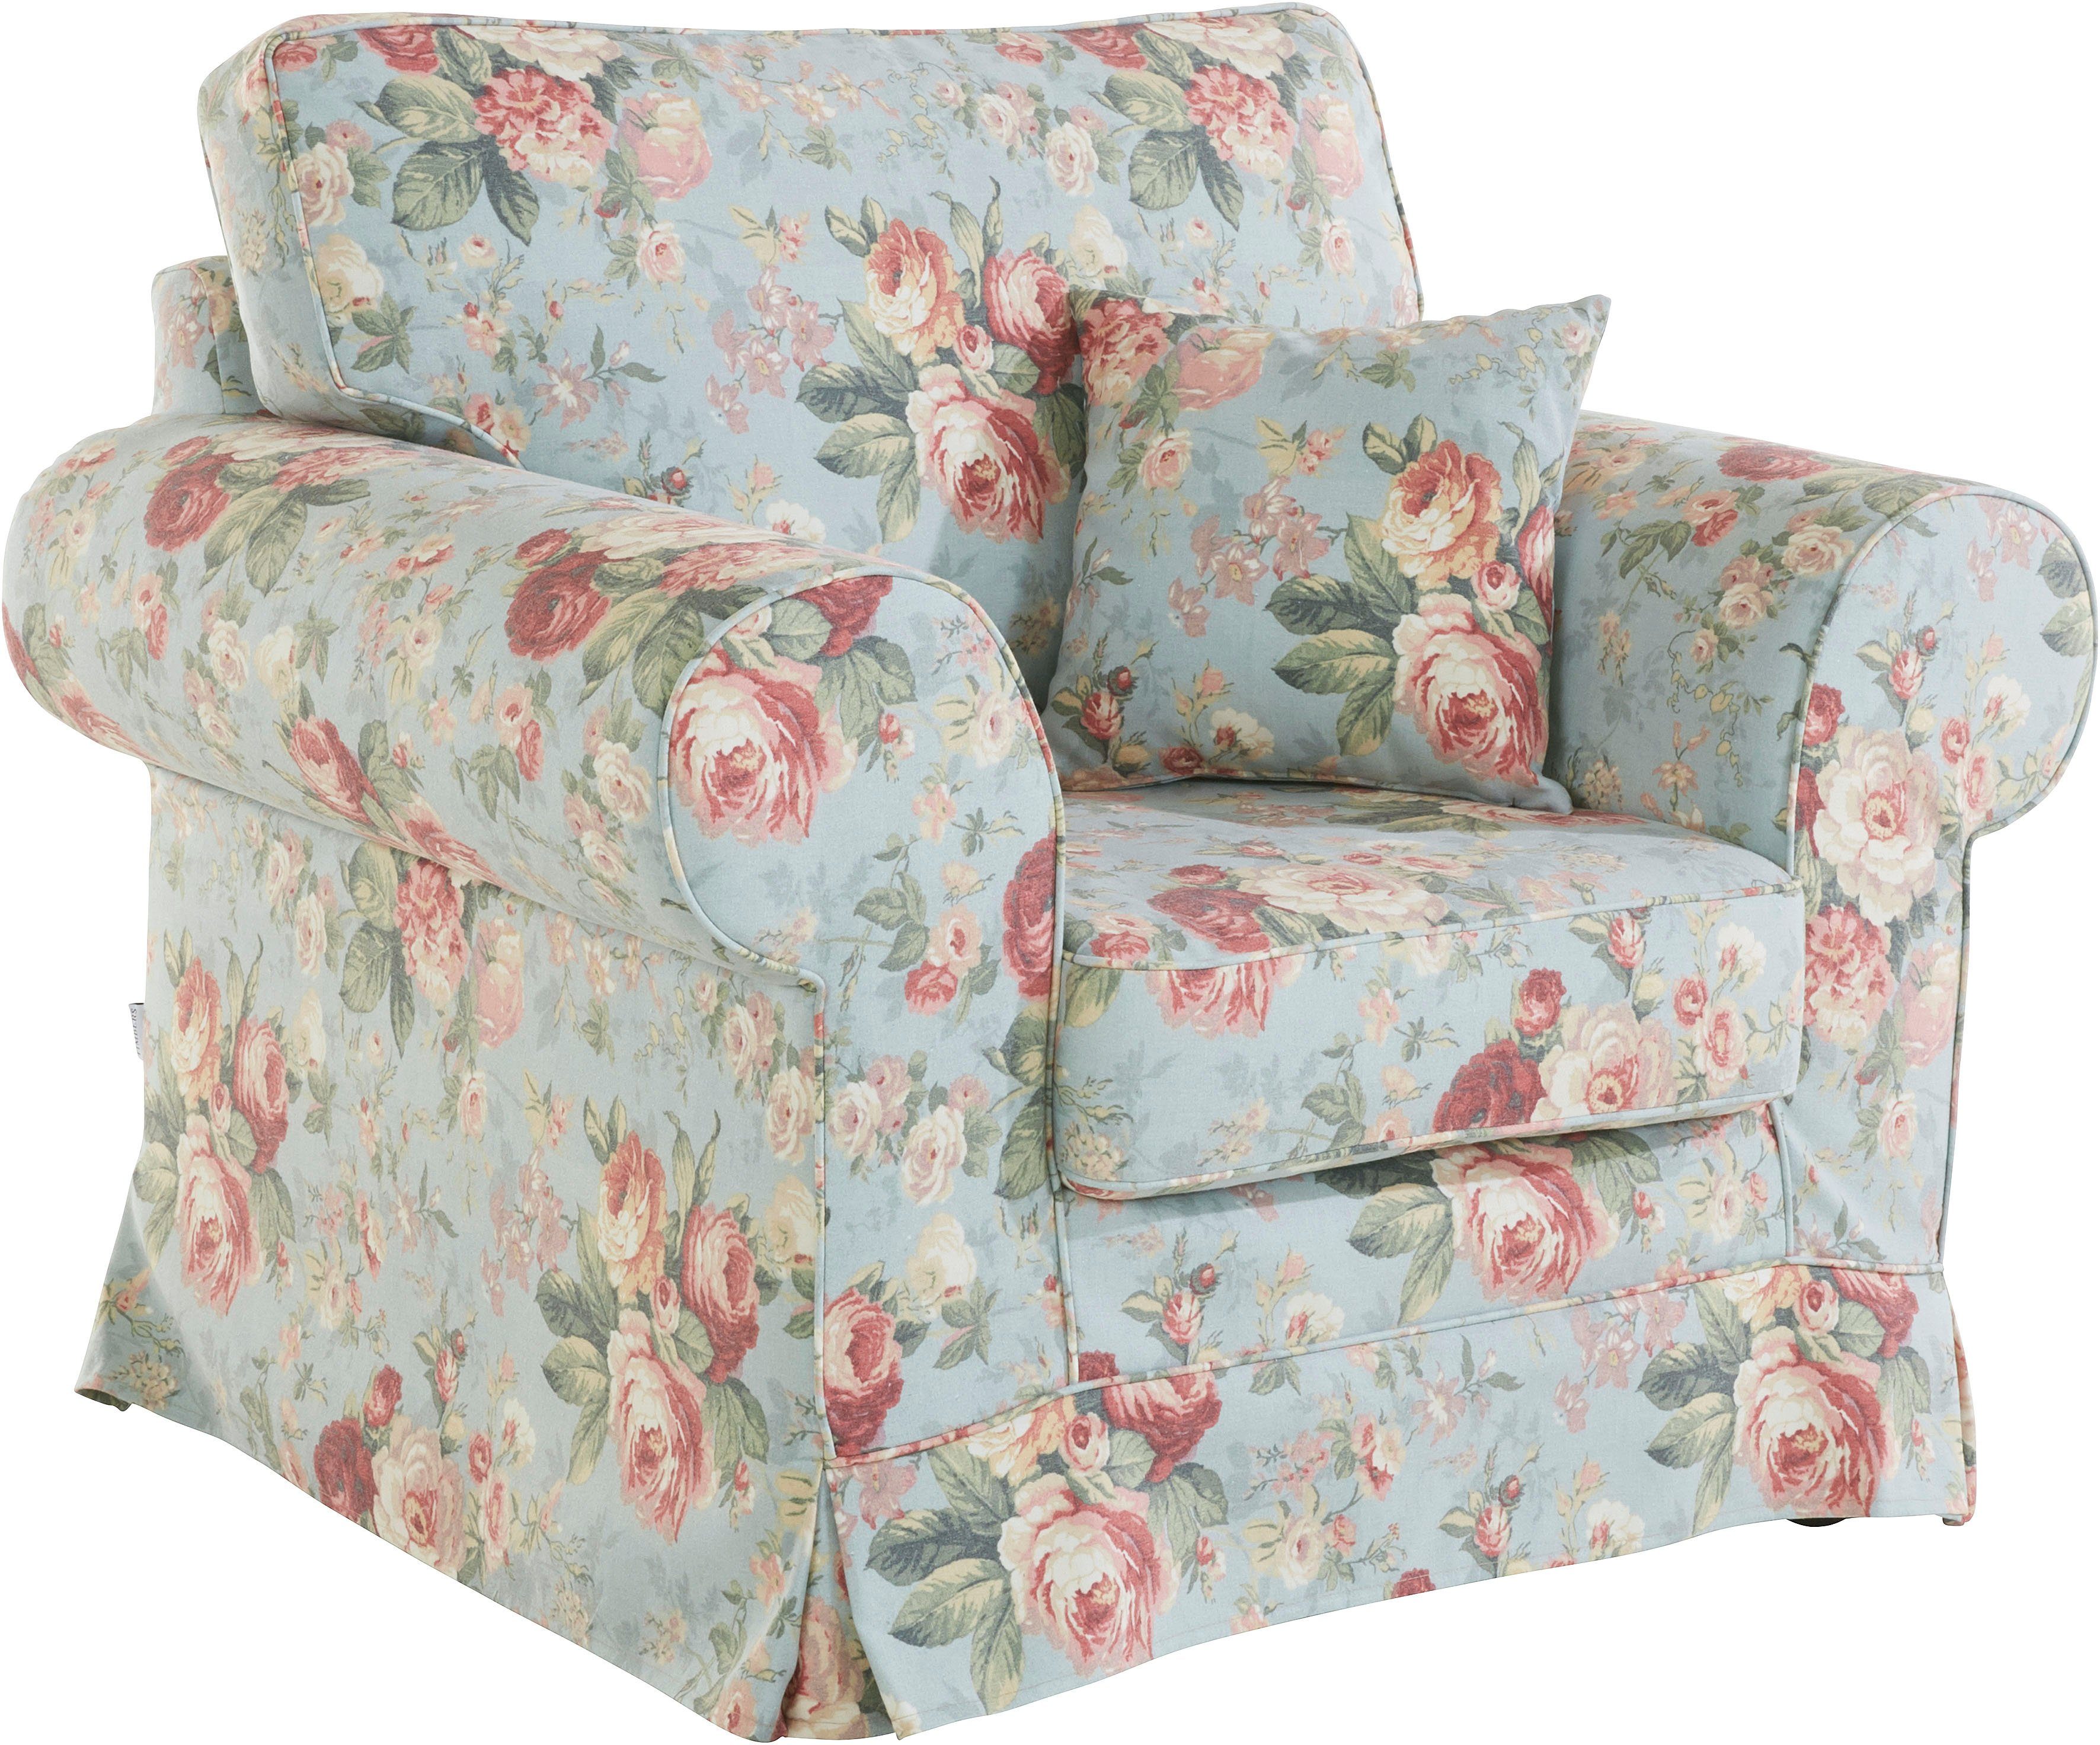 Home Hussenoptik, Shadmoor-Serie Sessel zur Shadmoor, affaire mit Blumendruck, uni passend in oder